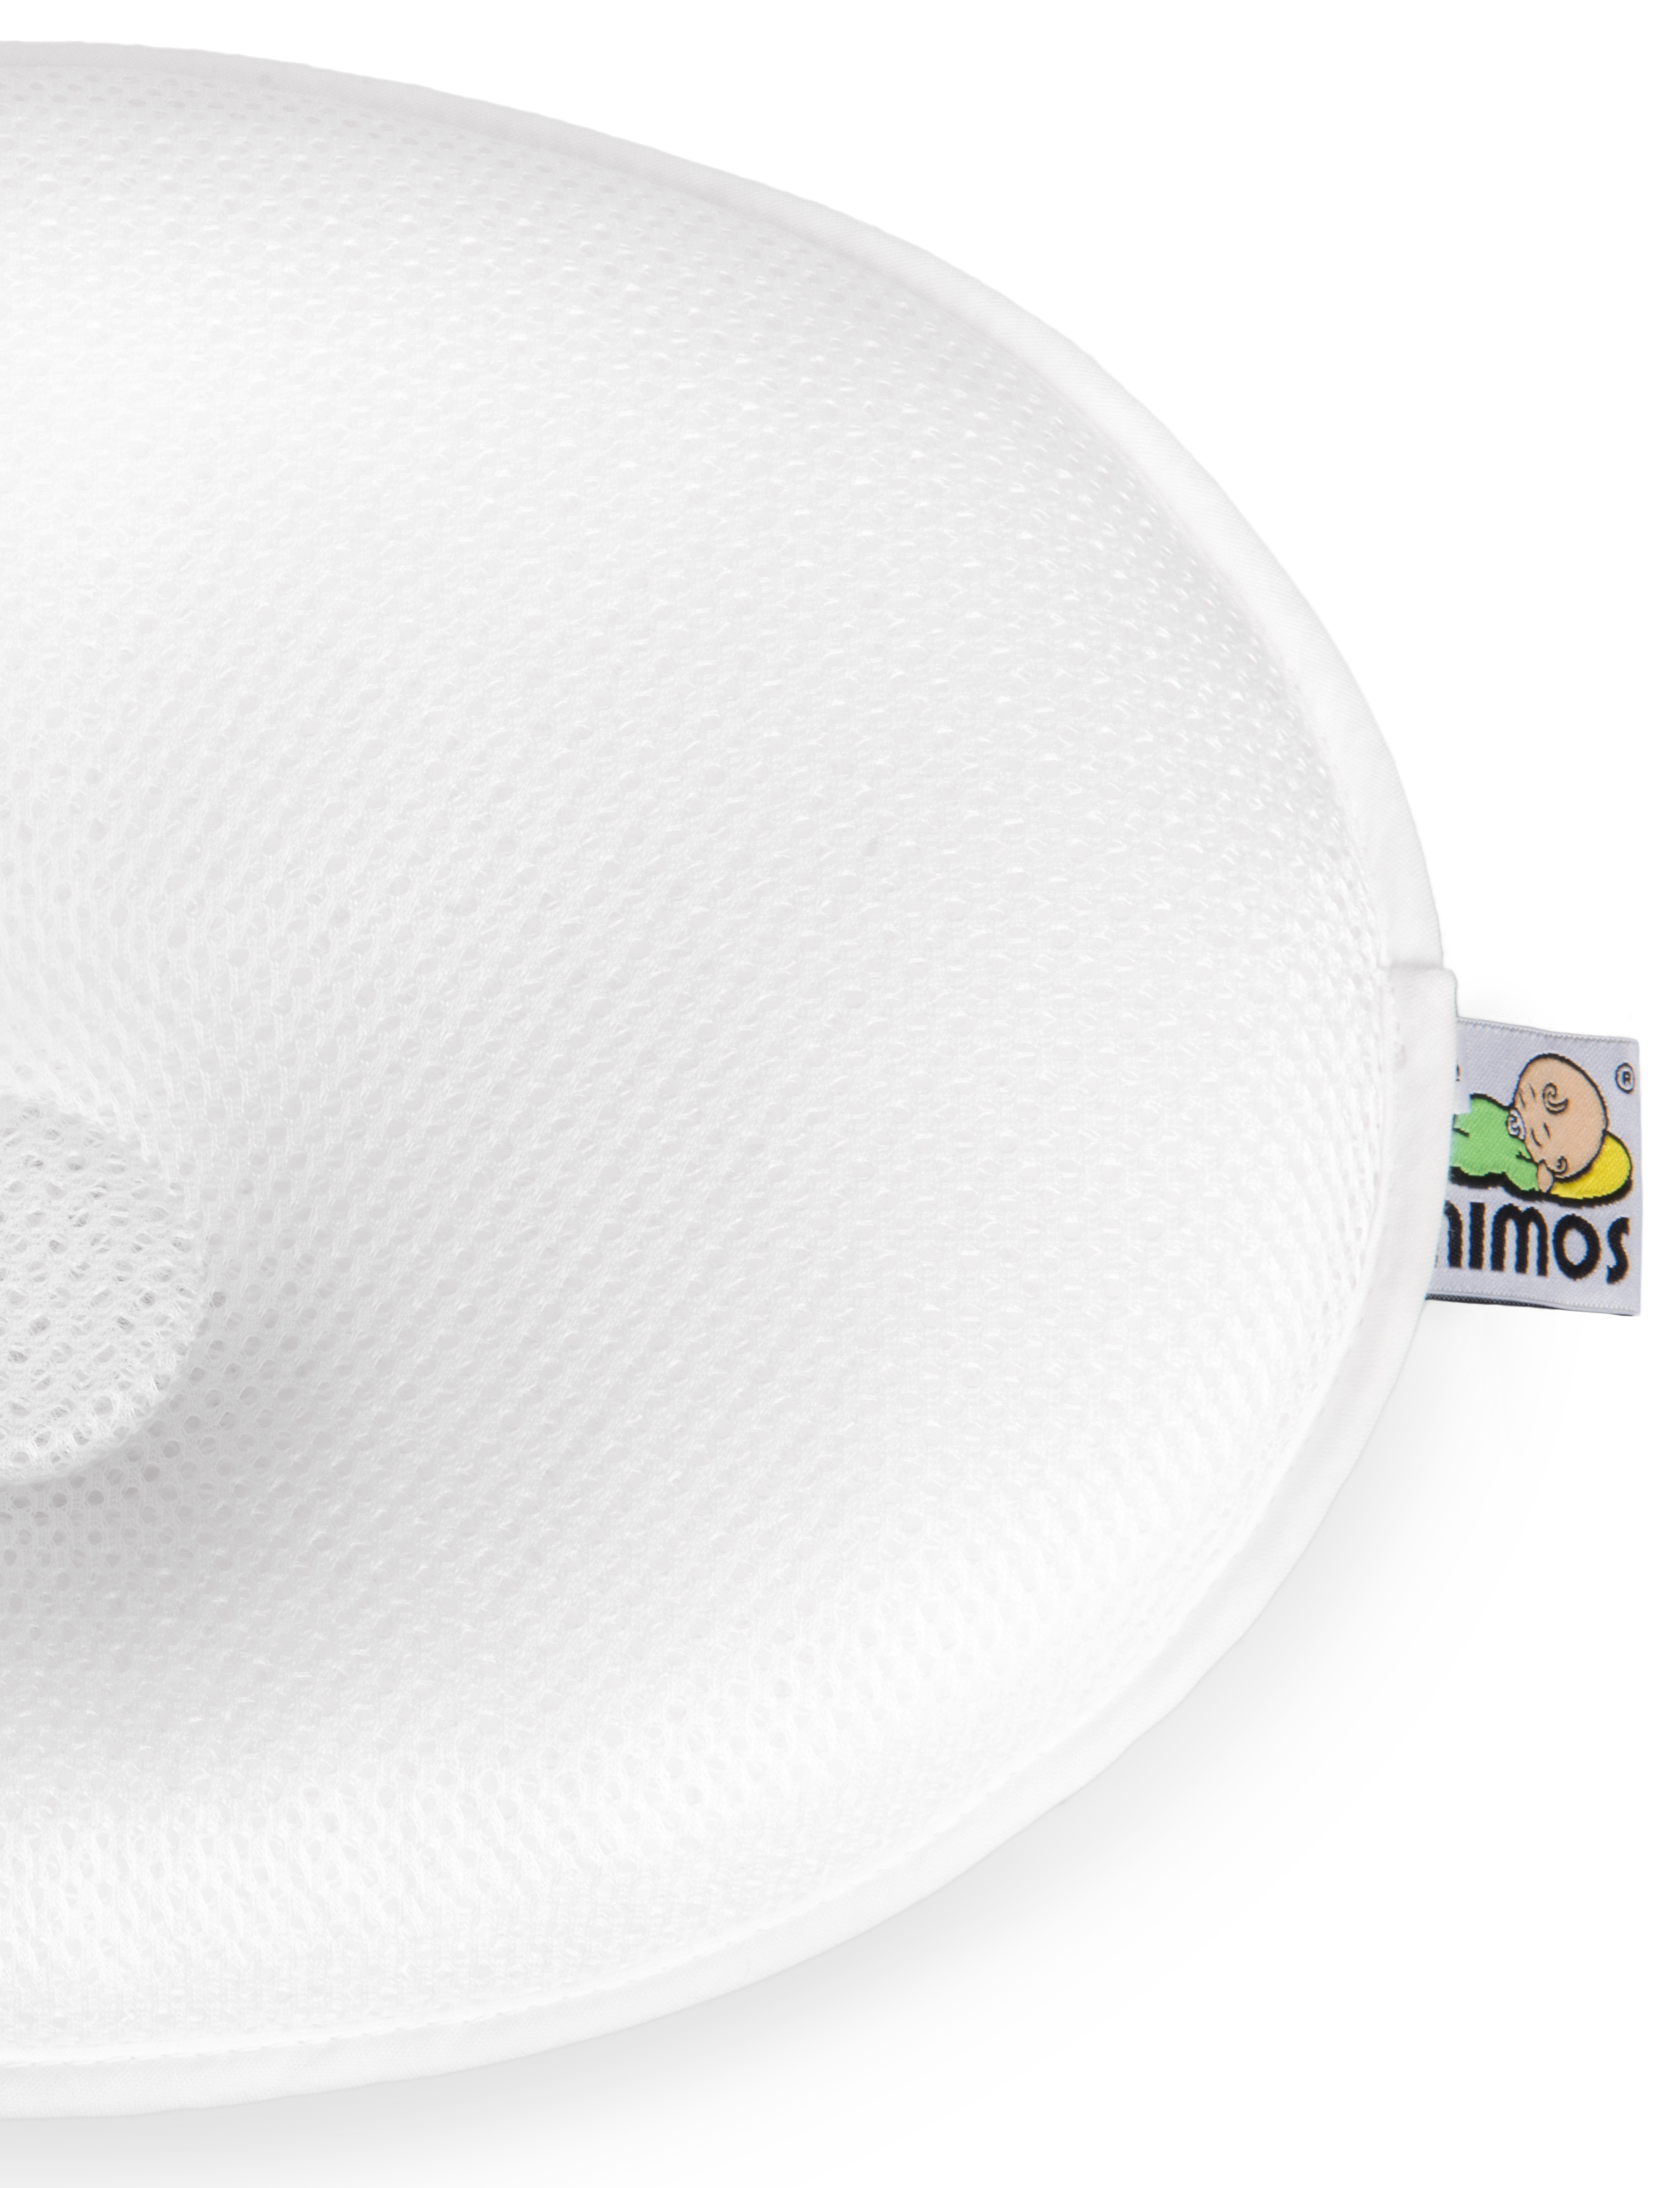 Mimos Pillow